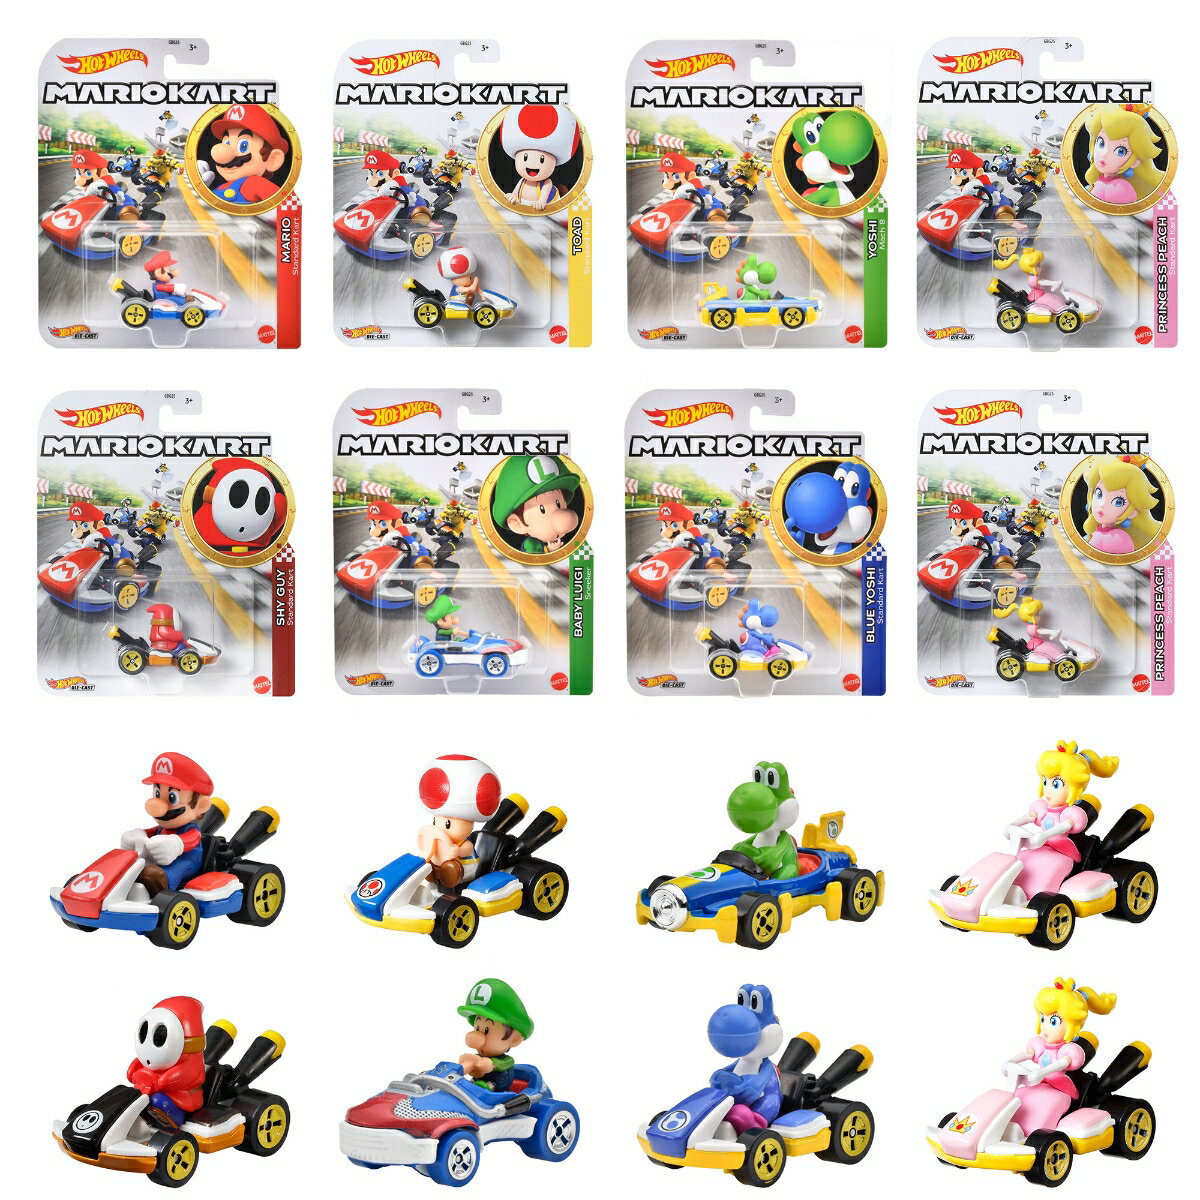 【内容】マリオカートのダイキャストカーの新しいアソートが登場！「あおヨッシー/スタンダードカート」を含む全7種類のラインアップとなっています。
【内訳】マリオ/スタンダードカート（Mario, Standard Kart）x1、ベビィルイージ／スニーカート（Baby Luigi, Sneeker）x1、あおヨッシー/ スタンダードカート（Blue Yoshi, Standard Kart）x1、ヨッシー/Gフォース　（Yoshi, Mach 8）x1、キノピオ/スタンダードカート（Toad, Standard Kart）x1、ピーチ/スタンダードカート（Princess Peach, Standard Kart）x2、ヘイホー/スタンダードカート（Shy Guy, Standard Kart）x1、合計8点
【原産国】タイ 【対象年齢】3歳〜
【BOX入り】BOX販売のため、専用の段ボールに入っています。専用段ボールは商品がピッタリ収まるため、大切なコレクションを保管するのに最適です。
【Brandについて】カリフォルニア生まれ 1秒間に16台売れているミニカー。
【ホットウィール】Hot Wheels＝「かっこいい車！」独特な南カルフォルニア風の外観、高速に動くホイール、（当時の最新技術！）そして 赤いラインの入ったタイヤ。現在、世界で一番売れているミニカーです。
【プレゼントに最適】お誕生日、クリスマスプレゼント、入園・入学祝いなど記念日でのプレゼントにぴったりです。【対象年齢】：3歳以上【商品サイズ (cm)】(幅×高さ×奥行）：14×16.5×3.4